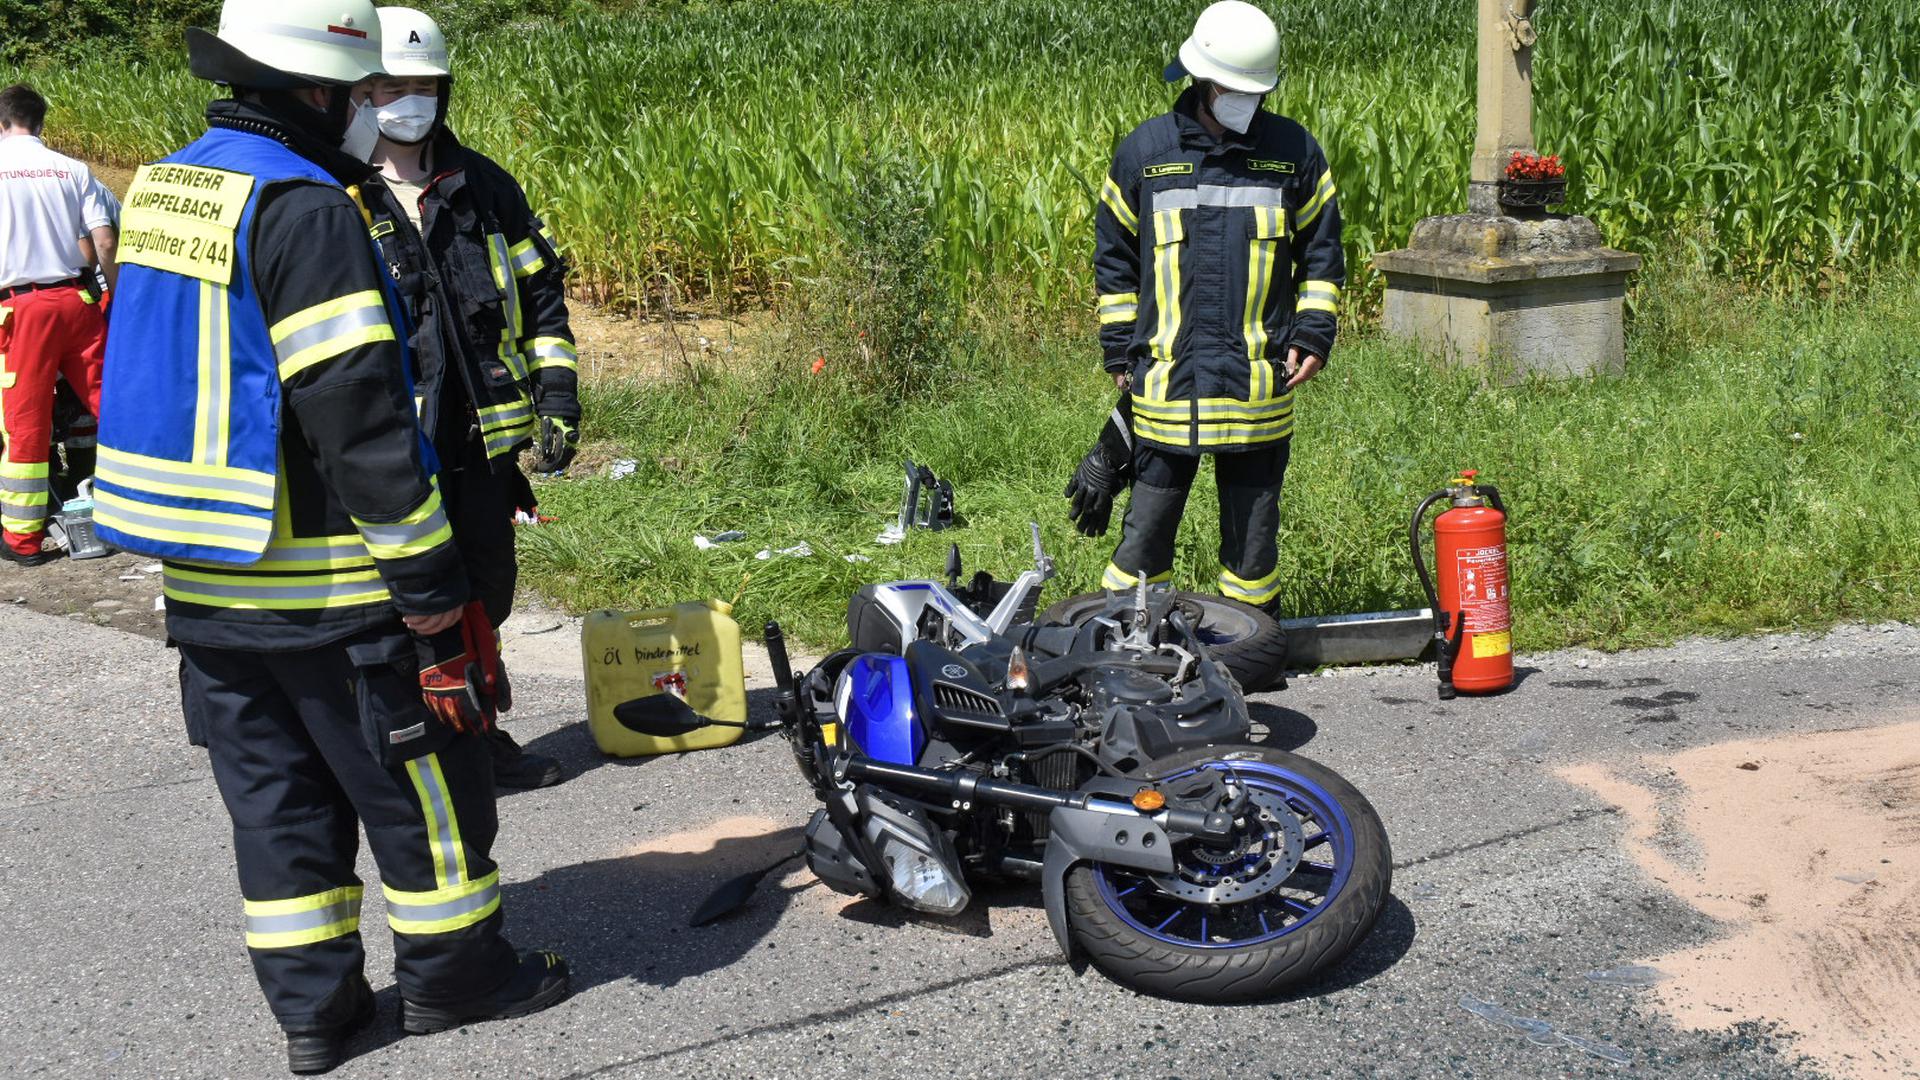 Einsatzkräfte der Feuerwehr Kämpfelbach stehen nach einem Unfall neben einem Motorrad, das auf der Straße liegt.